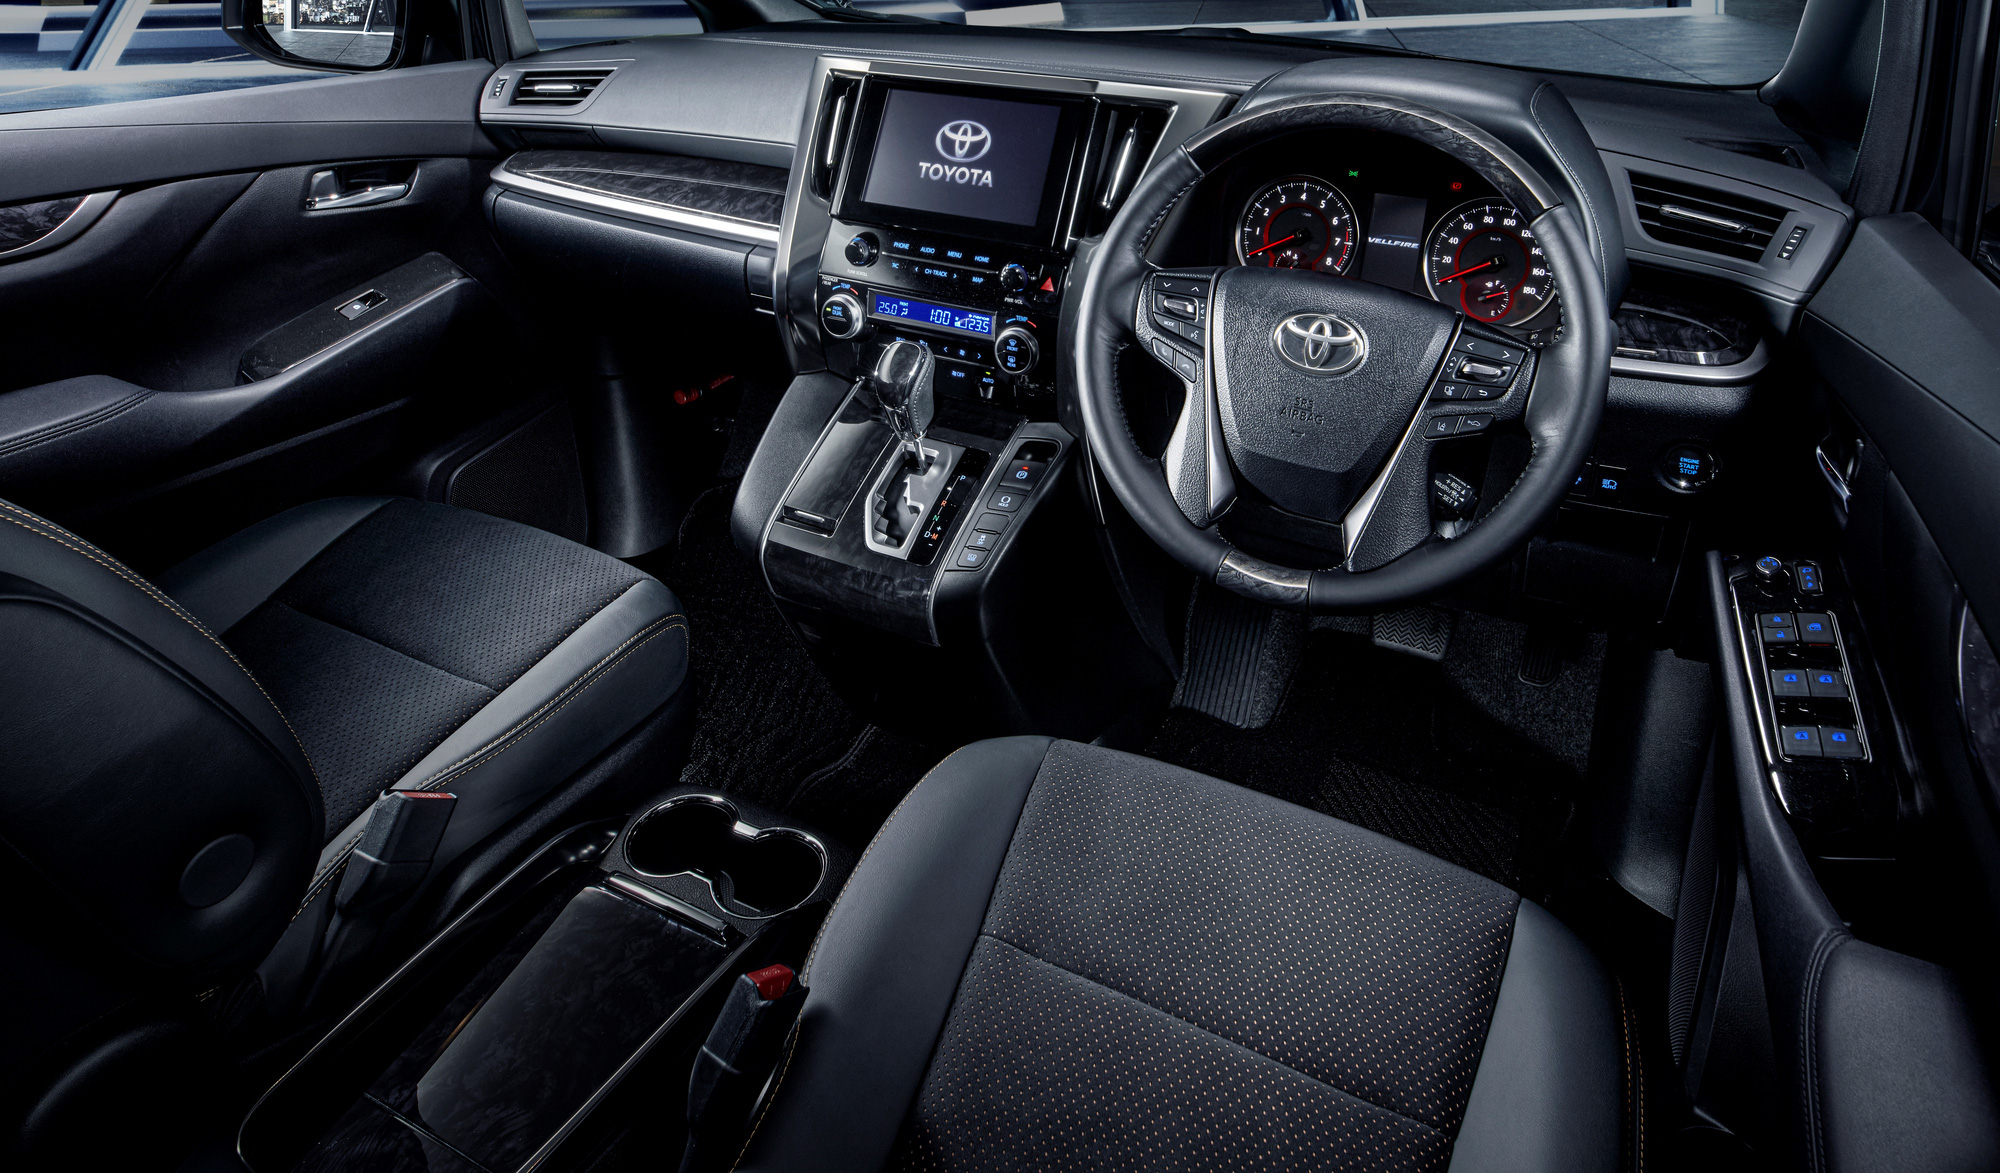 Chuyên cơ mặt đất Toyota Alphard có thêm bản Type Gold cho đại gia - Ảnh 3.